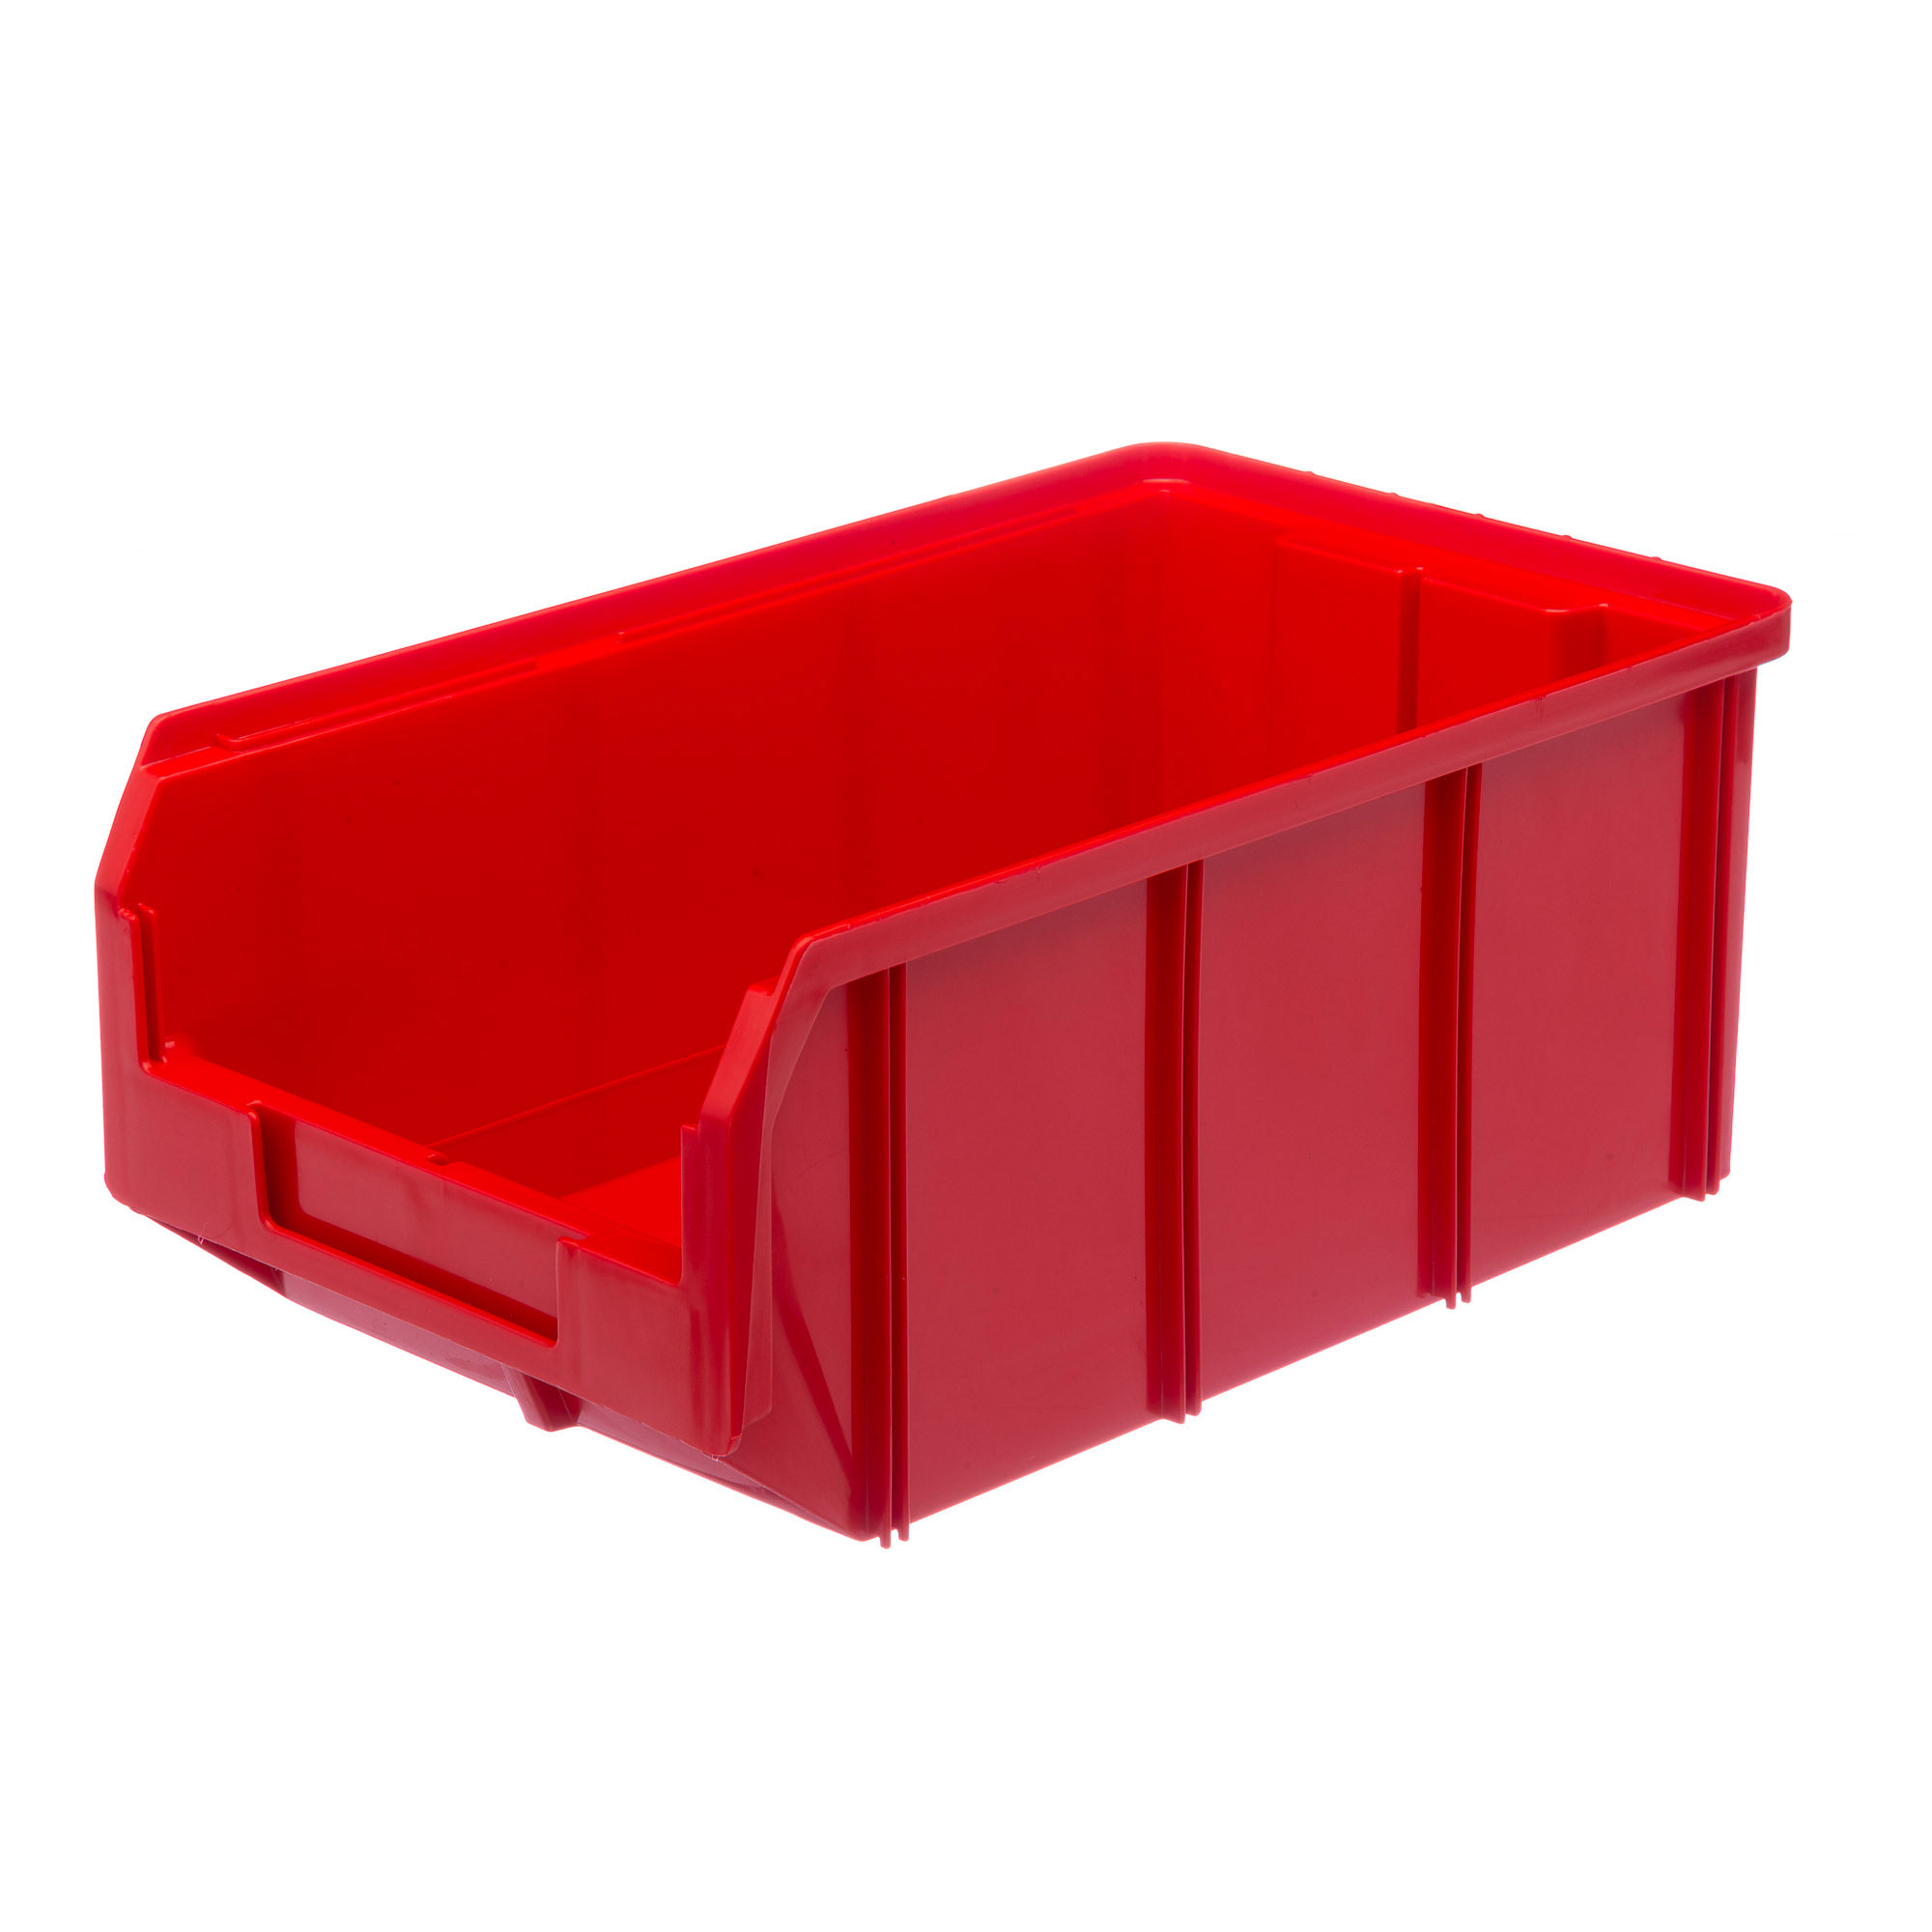 Пластиковый ящик Стелла-техник V-3-красный 342х207x143мм, 9,4 литра нагрудник для кормления пластиковый с карманом красный